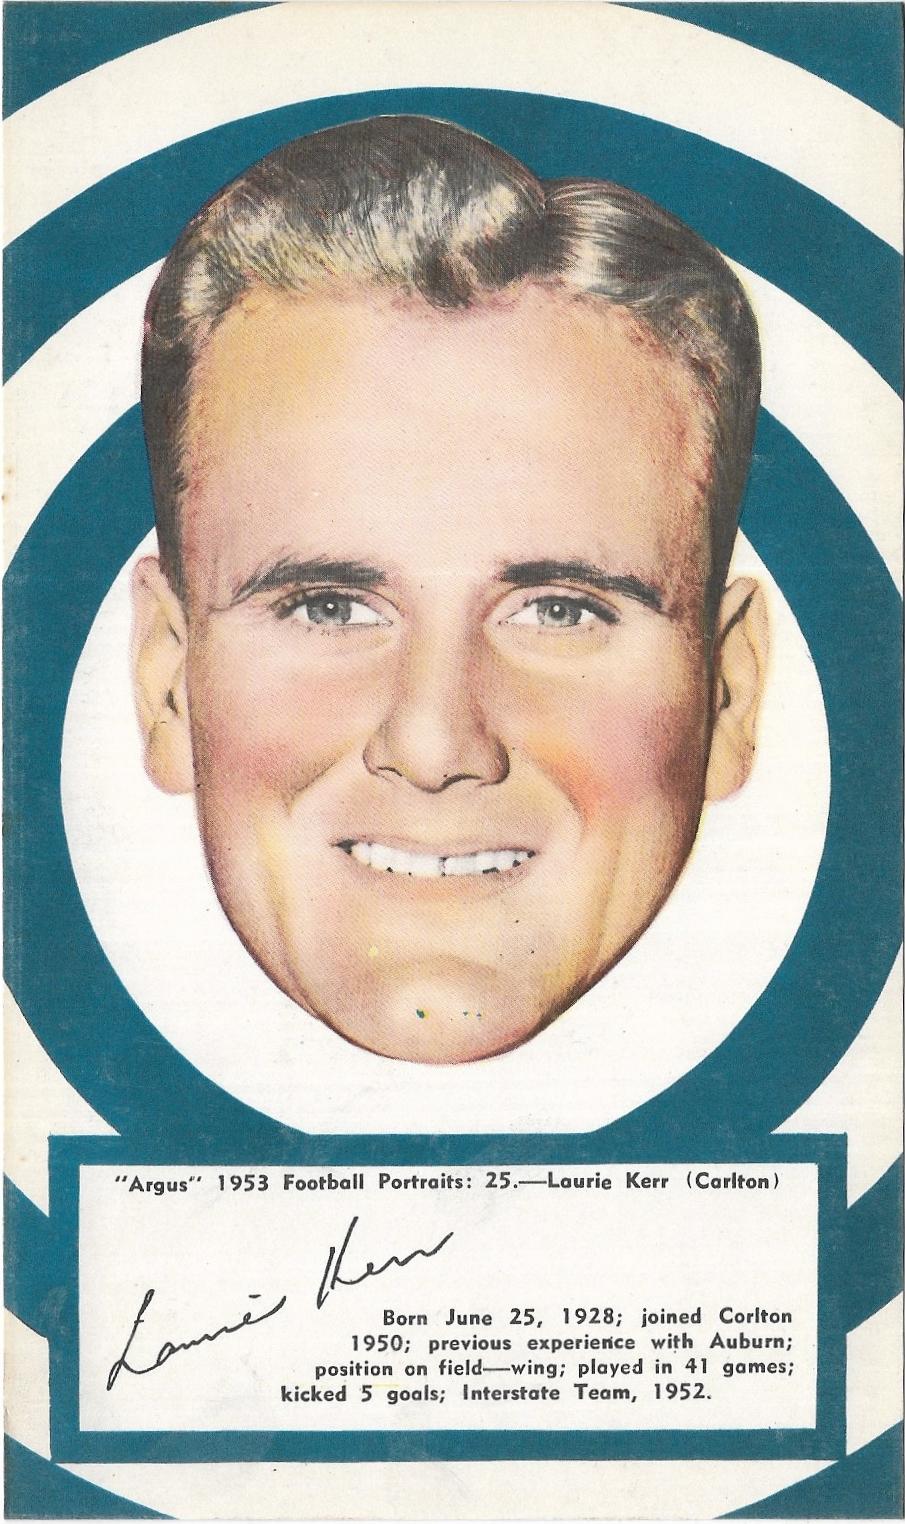 1953 Argus Football Portraits (25) Laurie Kerr Carlton